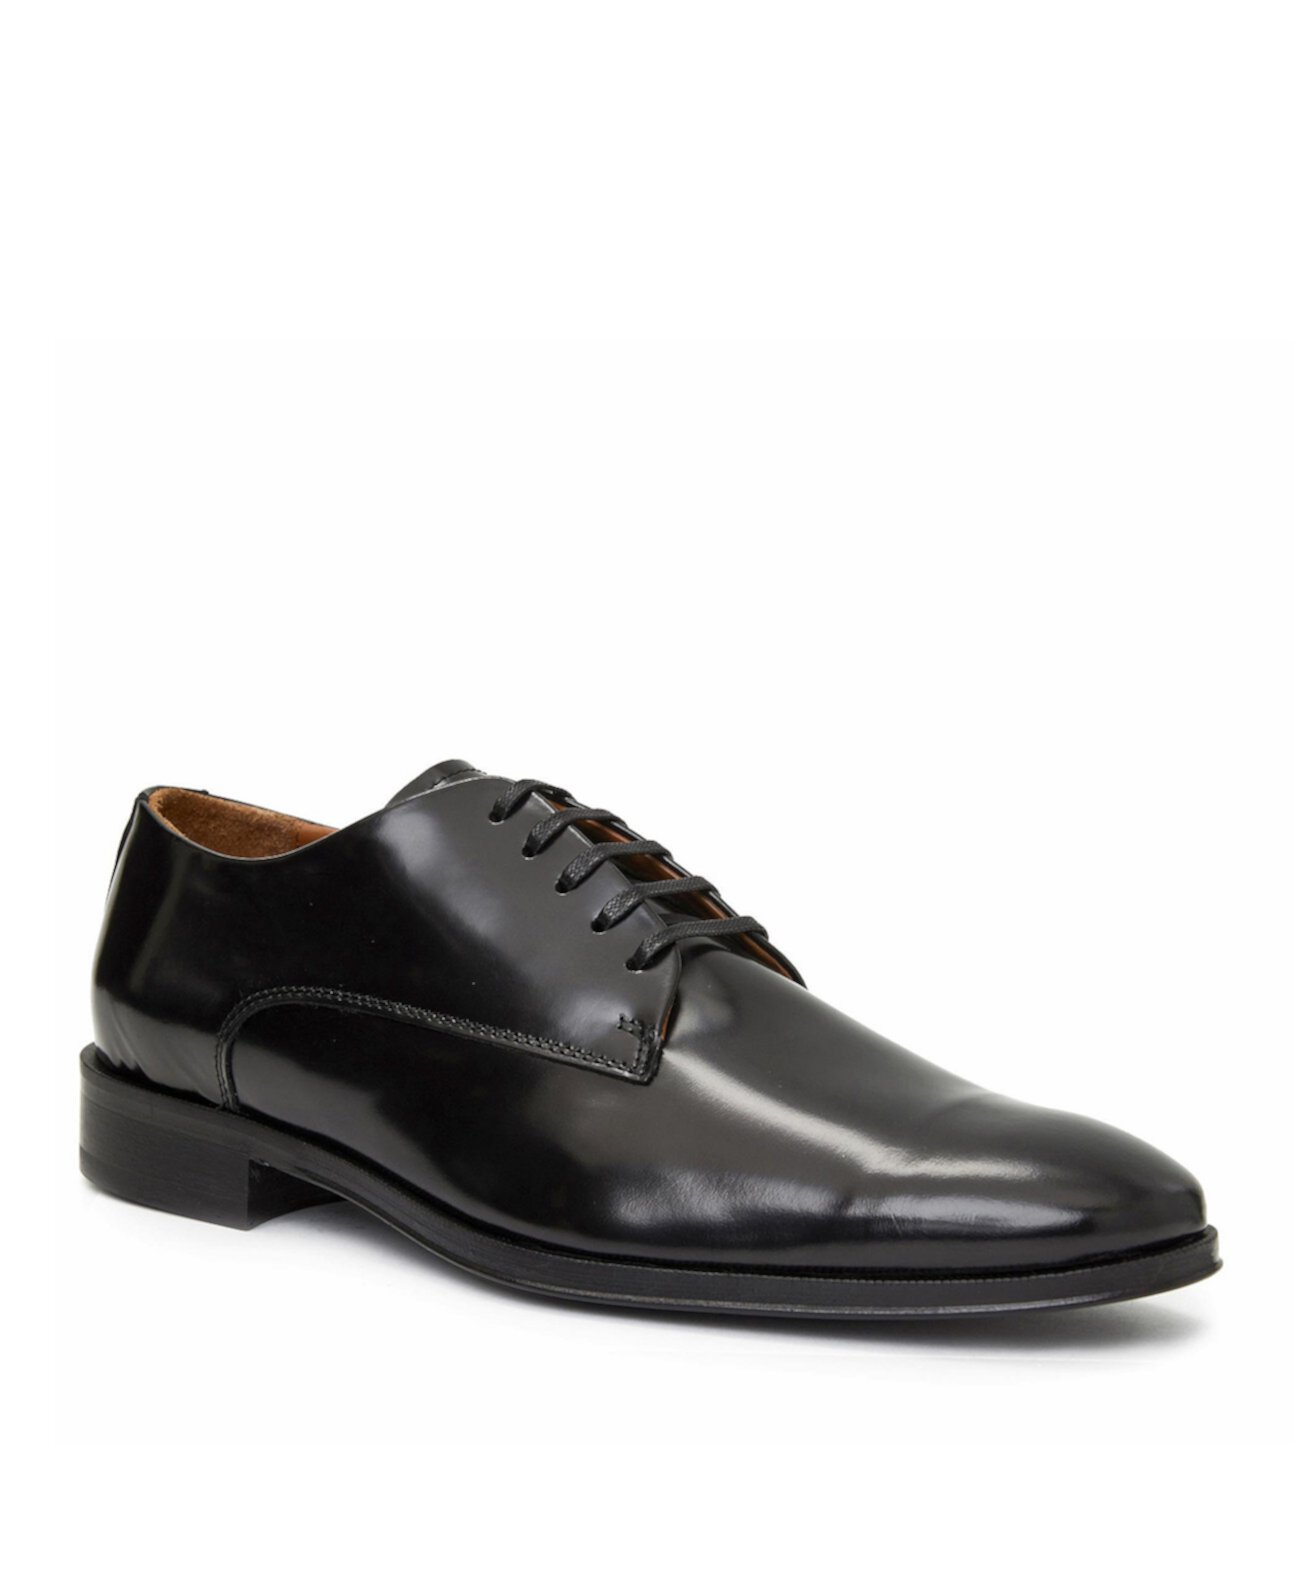 Men's Metti Leather Oxford Dress Shoes Bruno Magli